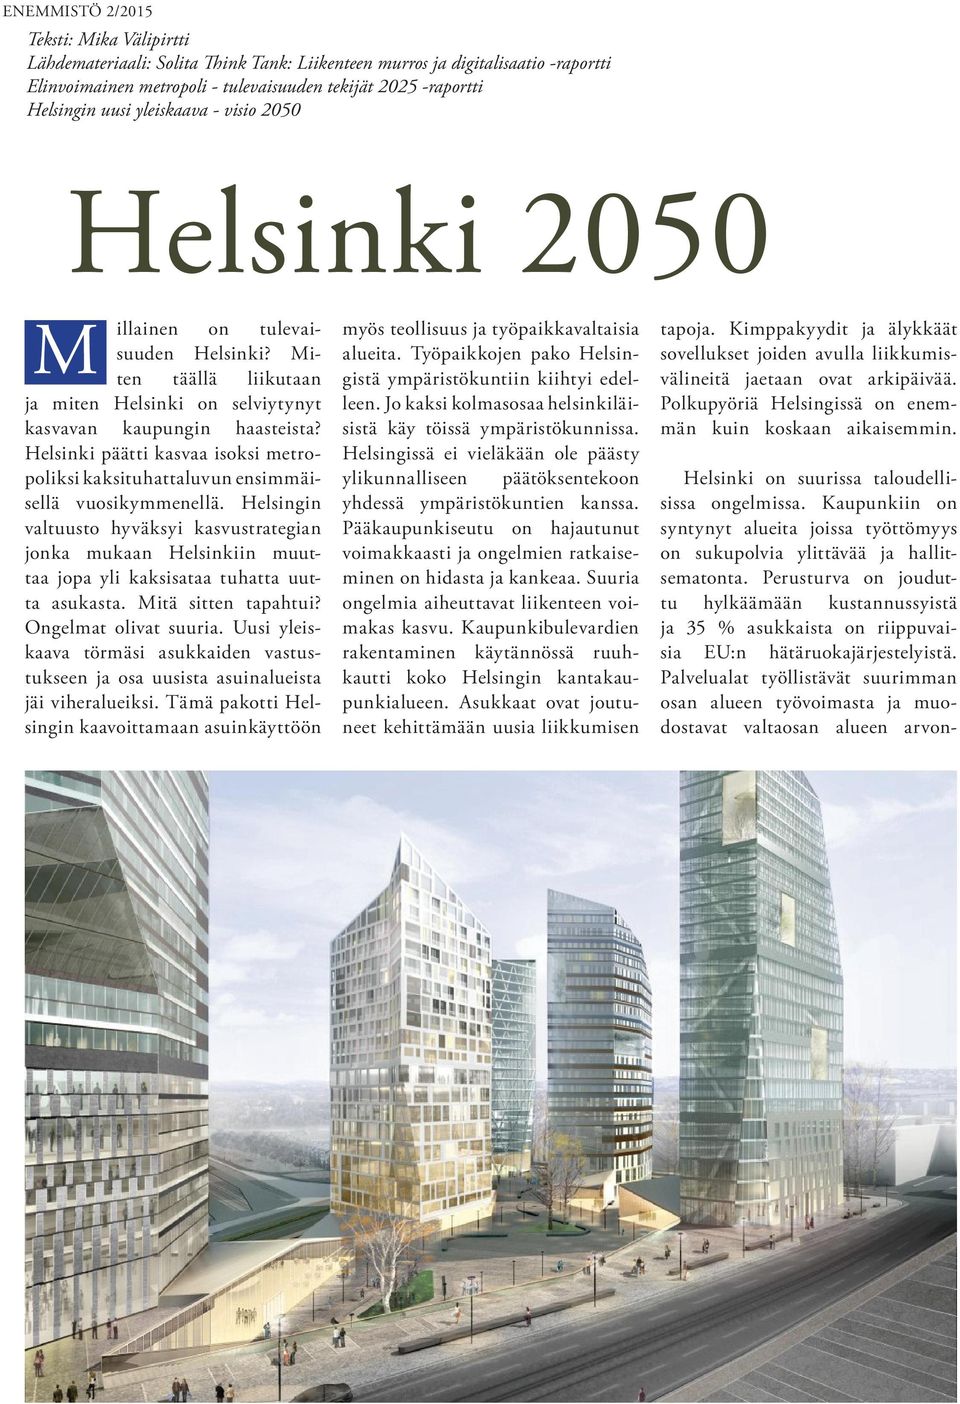 Helsinki päätti kasvaa isoksi metropoliksi kaksituhattaluvun ensimmäisellä vuosikymmenellä.